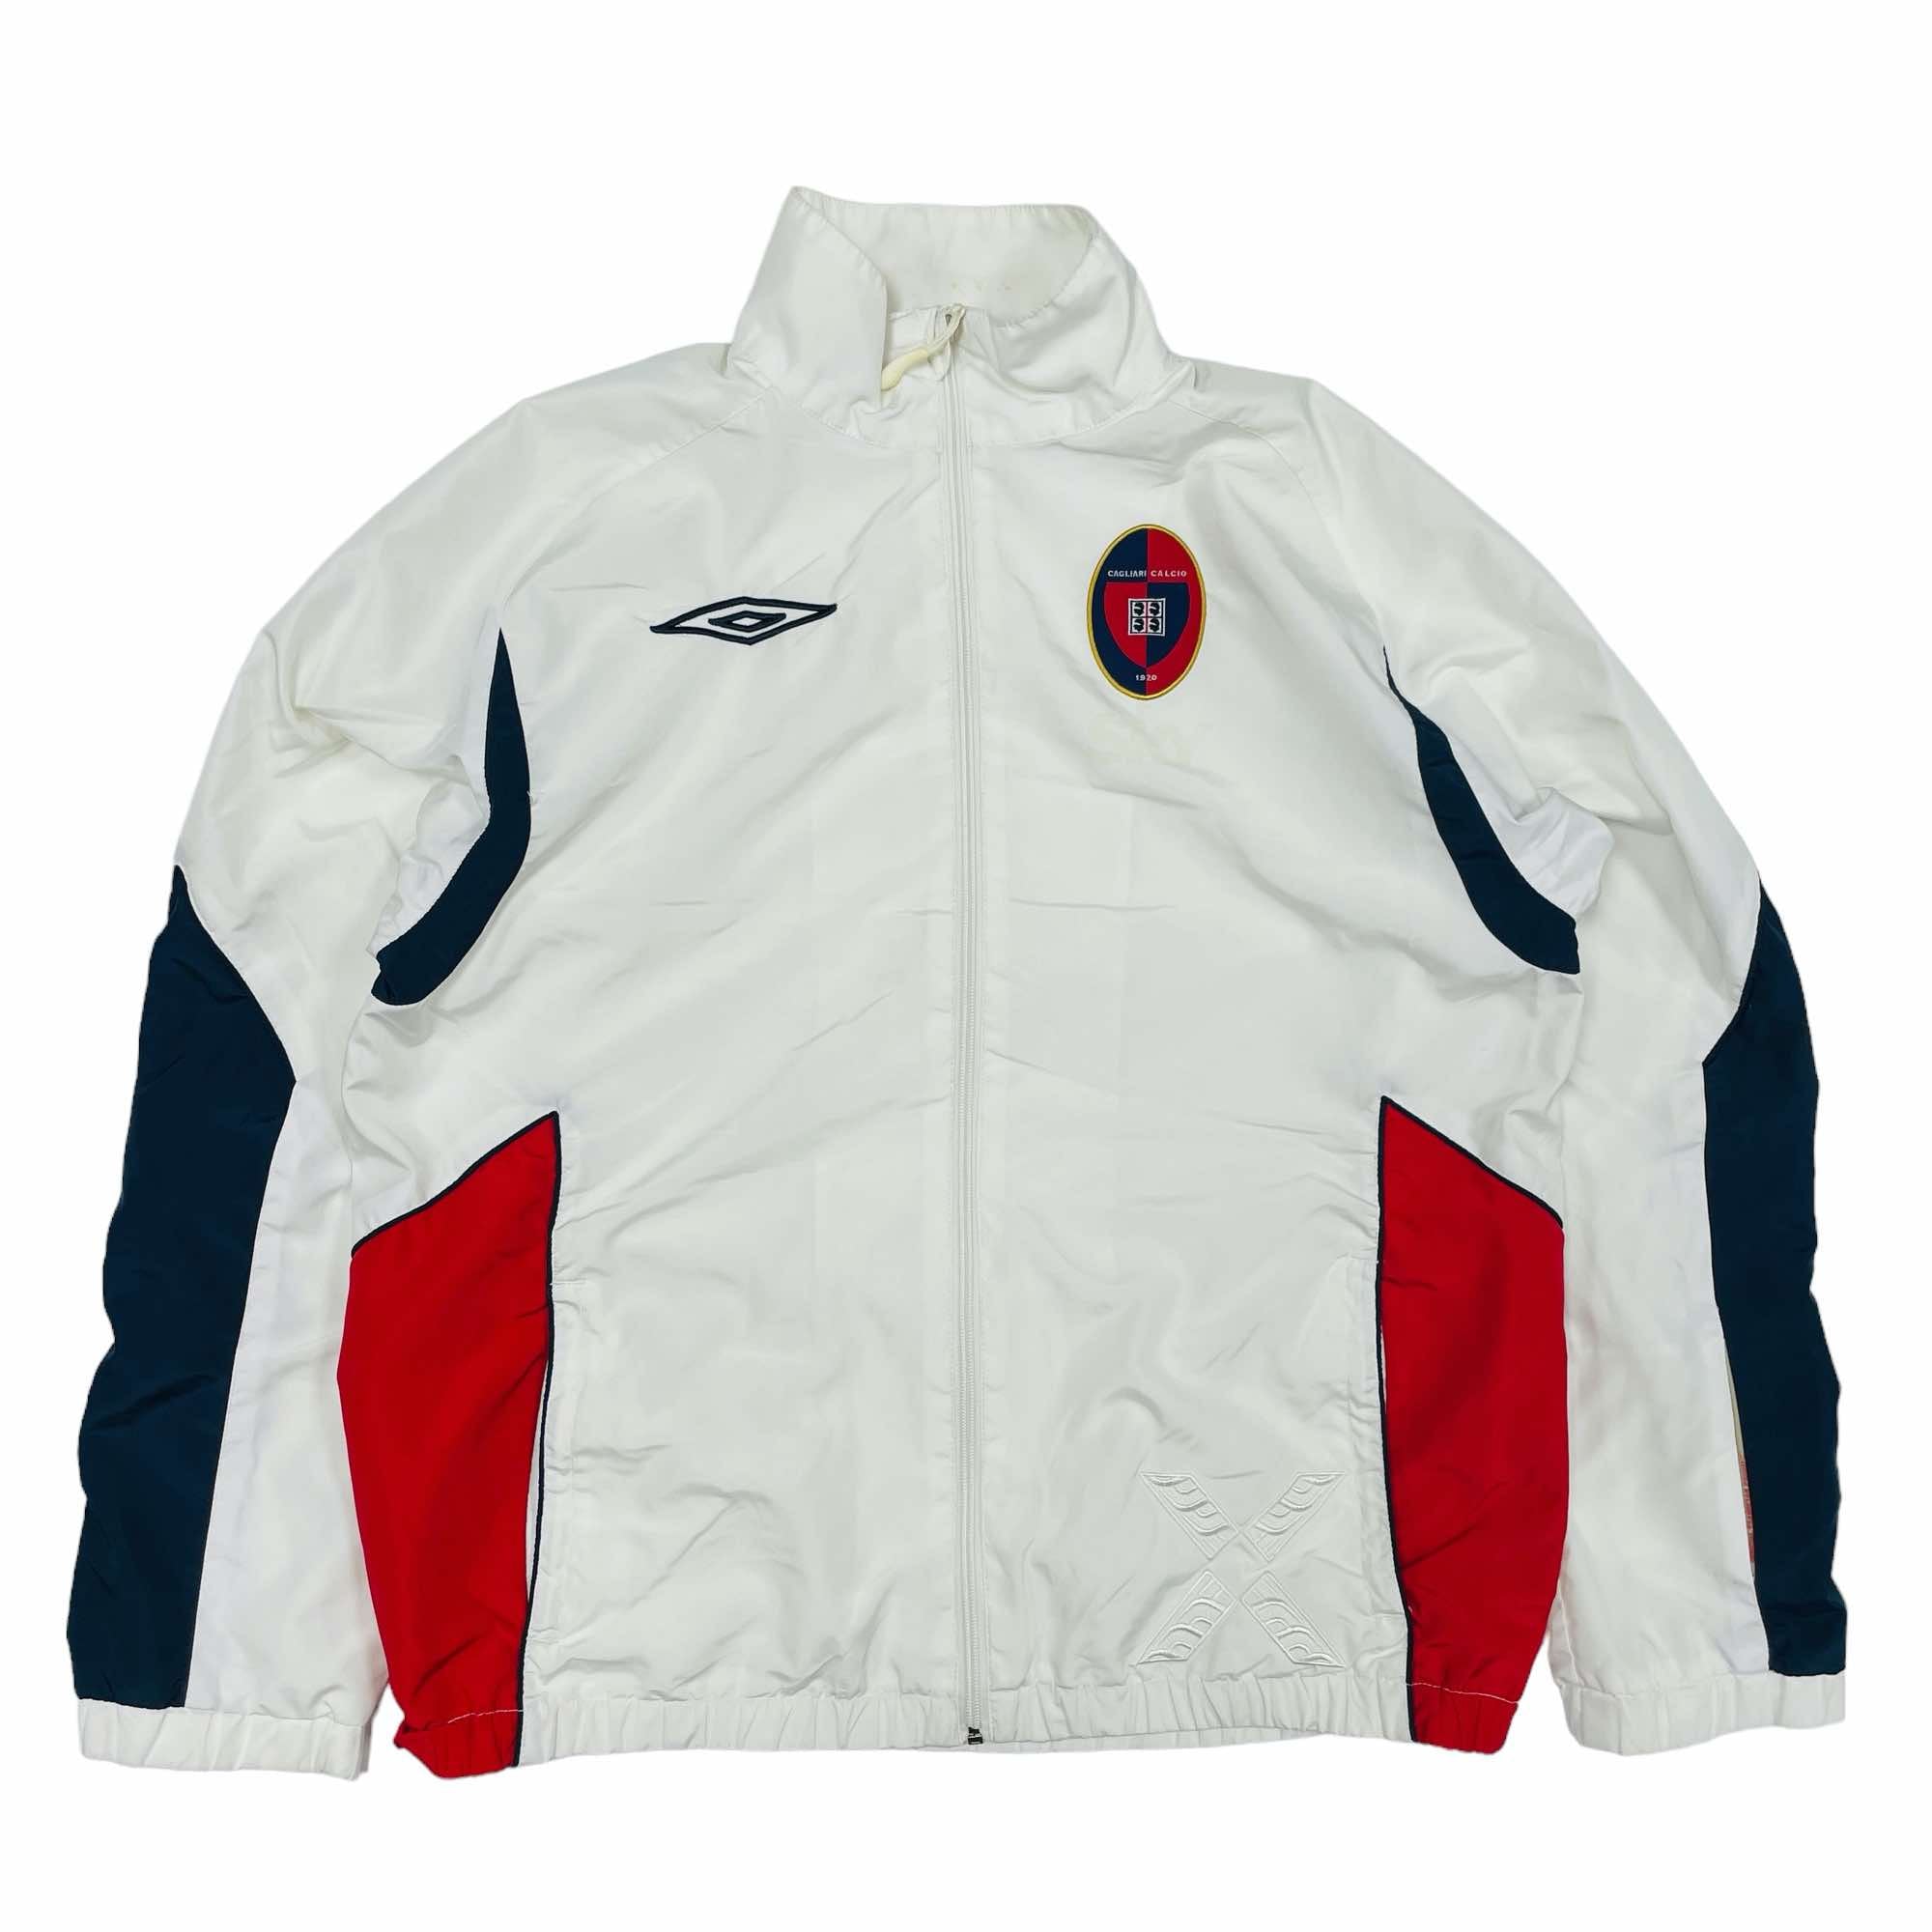 Cagliari 2007/08 Umbro Training Jacket - Large